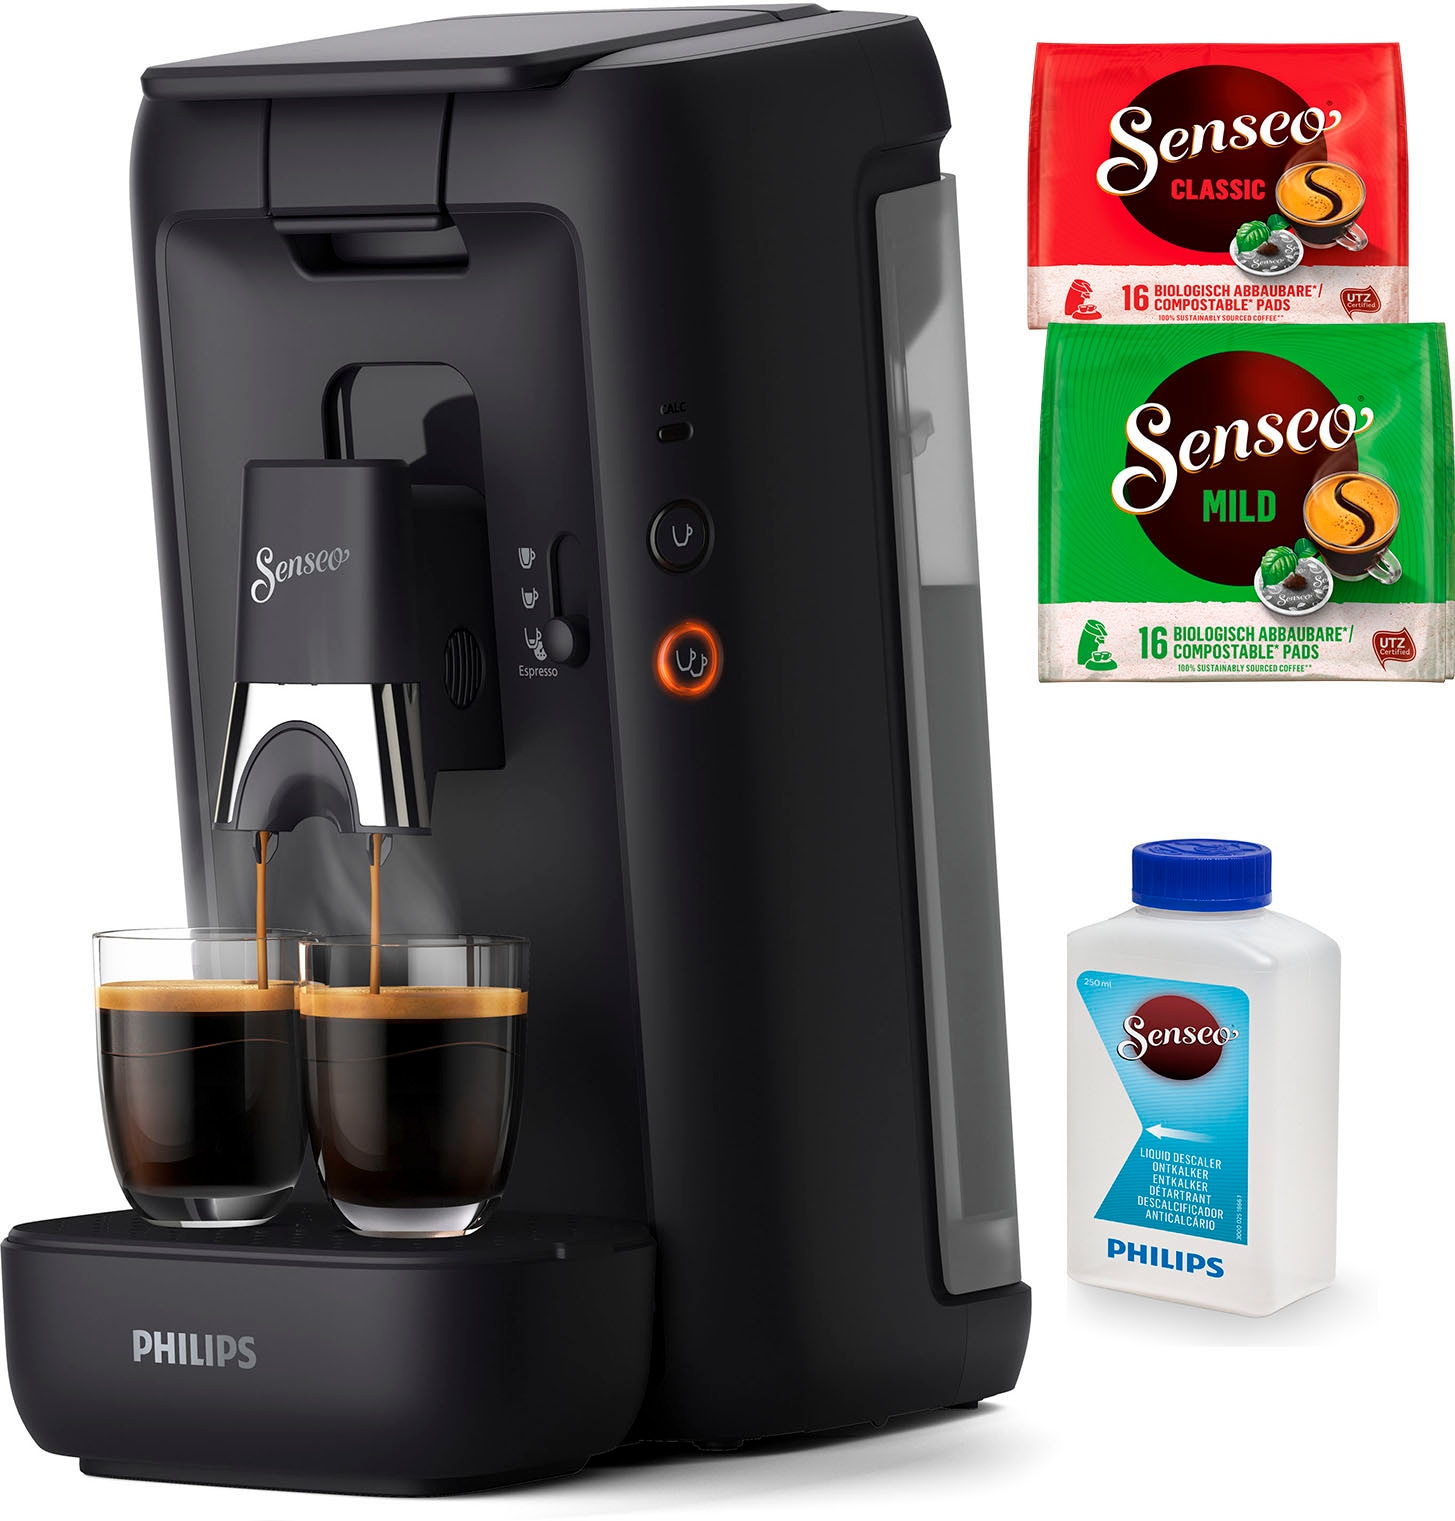 Philips Senseo Kaffeepadmaschine »Maestro CSA260/60, aus 80% recyceltem  Plastik, +3 Kaffeespezialitäten«, Memo-Funktion, inkl. Gratis-Zugaben im  Wert von € 14,- UVP jetzt im OTTO Online Shop